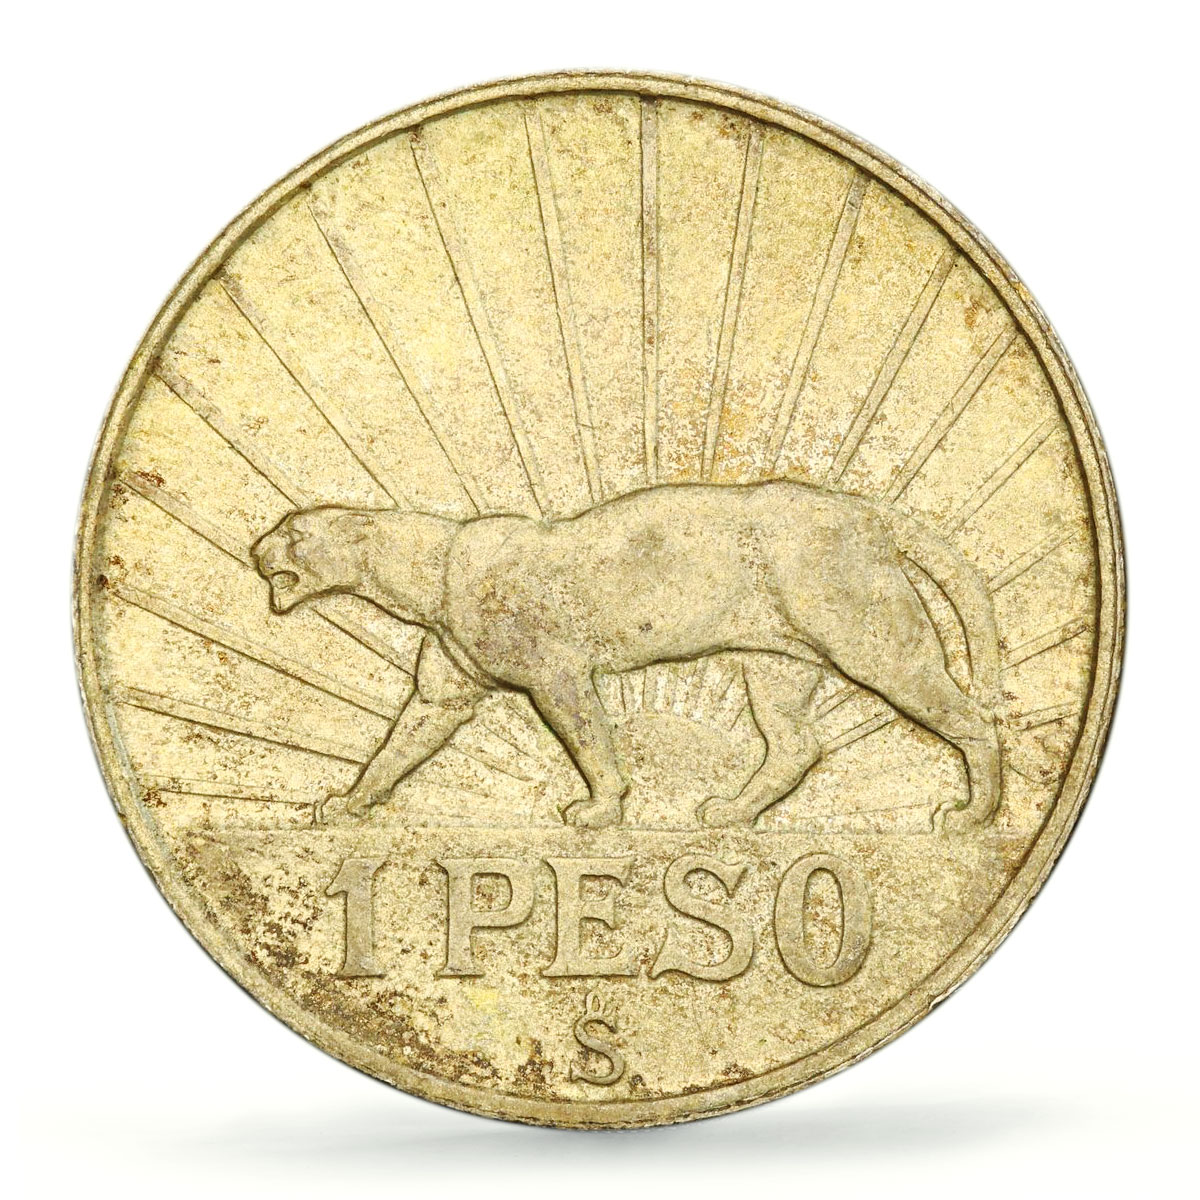 Uruguay 1 peso Oriental Artigas Cougar Puma KM-30 AU58 PCGS silver coin 1942